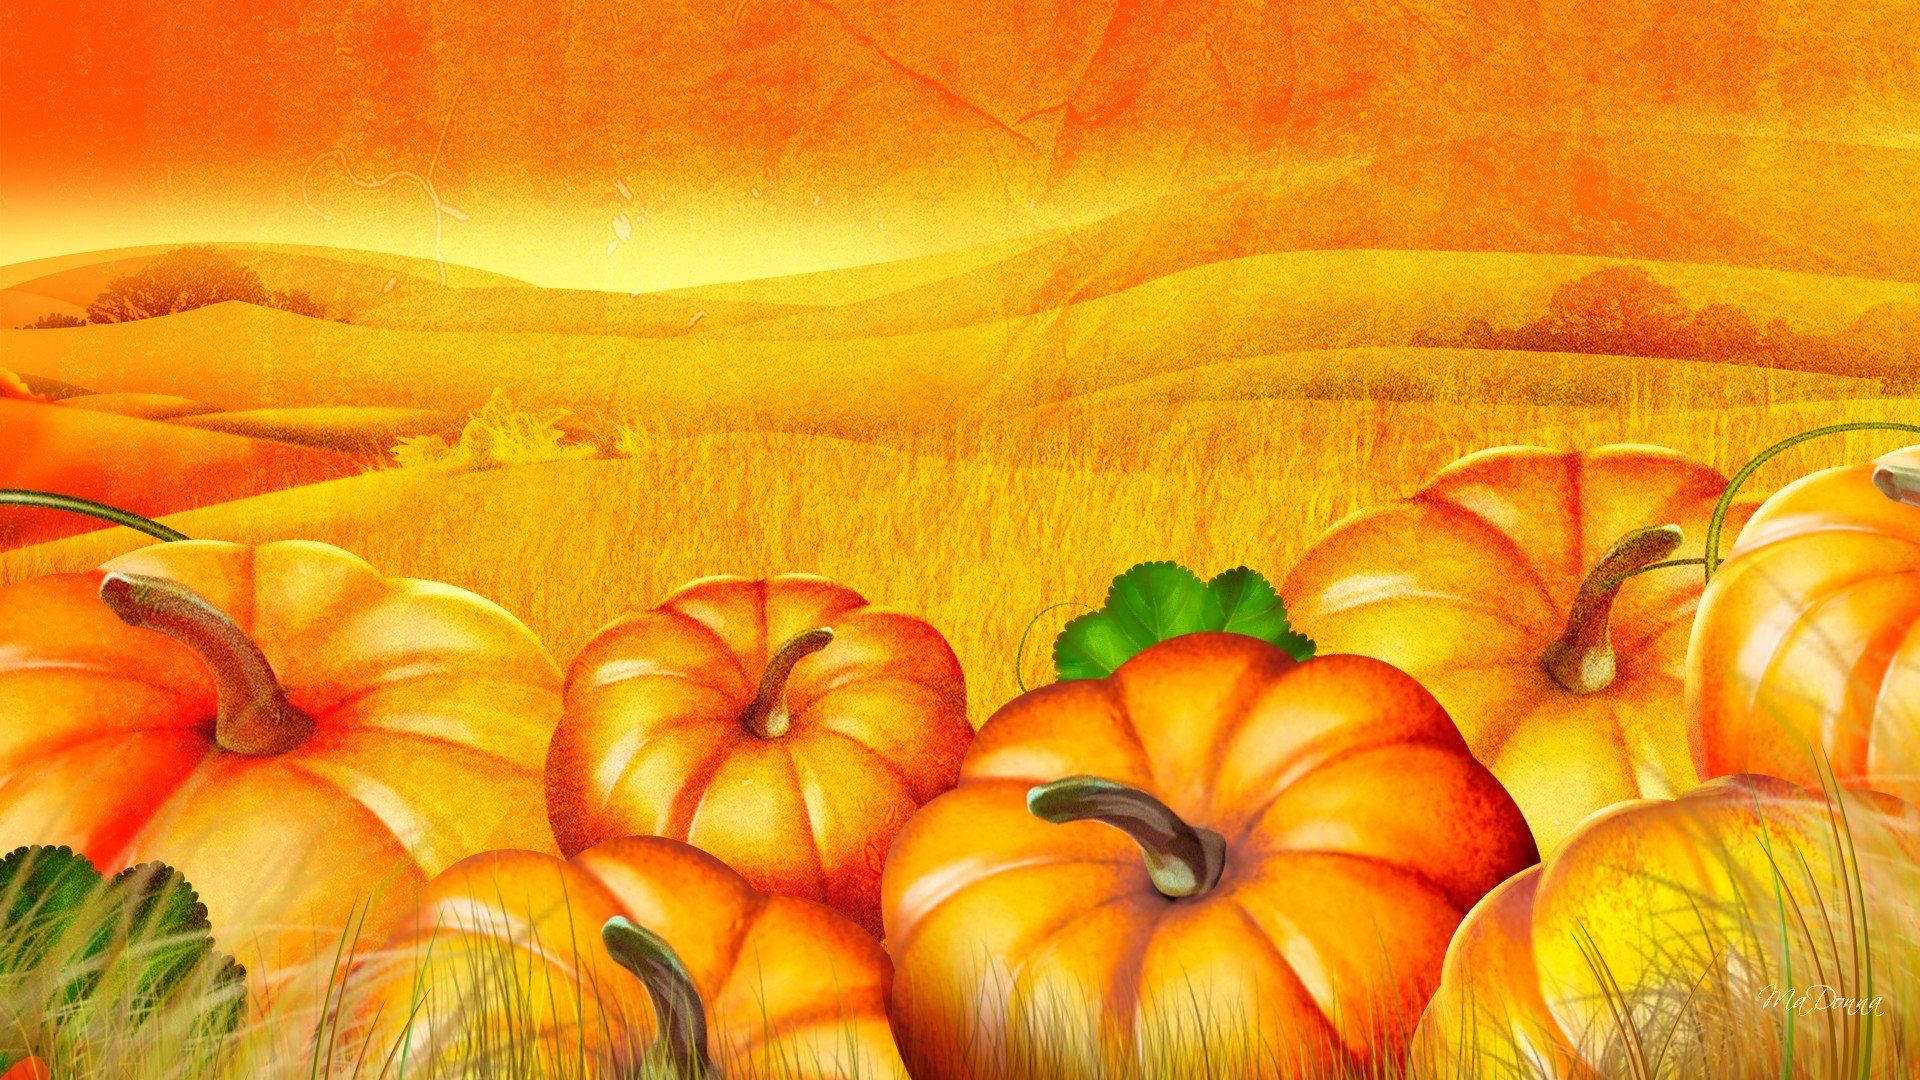 Pumpkin Picking Wallpaper. Pumpkin Wallpaper, Halloween Pumpkin Wallpaper and Fall Pumpkin Wallpaper